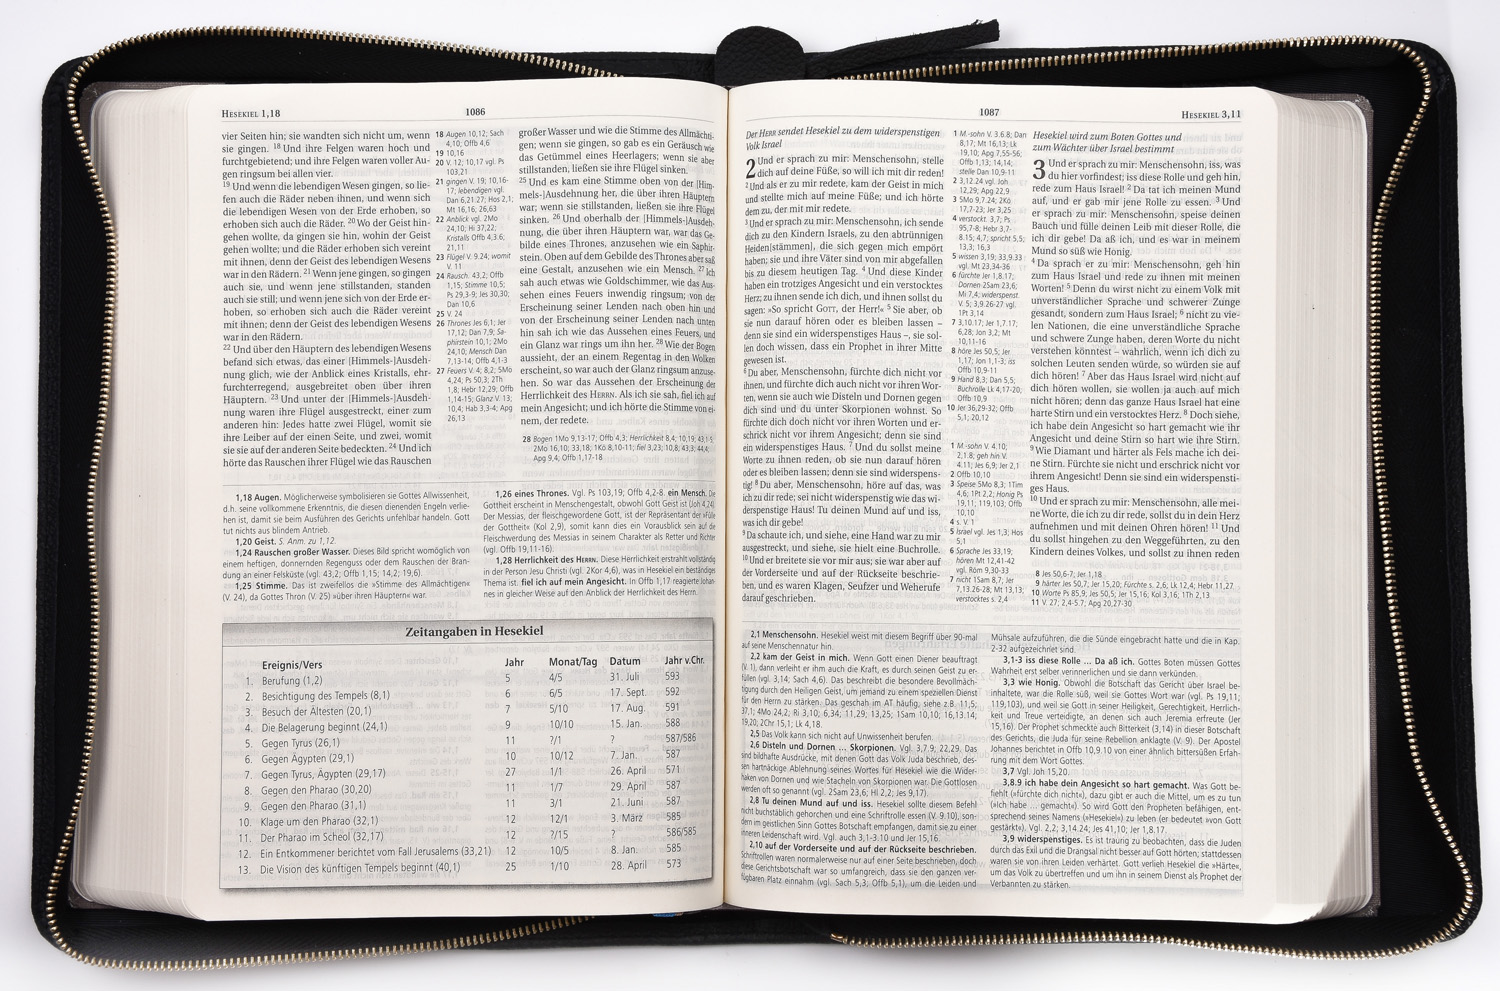 MacArthur Studienbibel - Hardcover mit Rindlederhülle